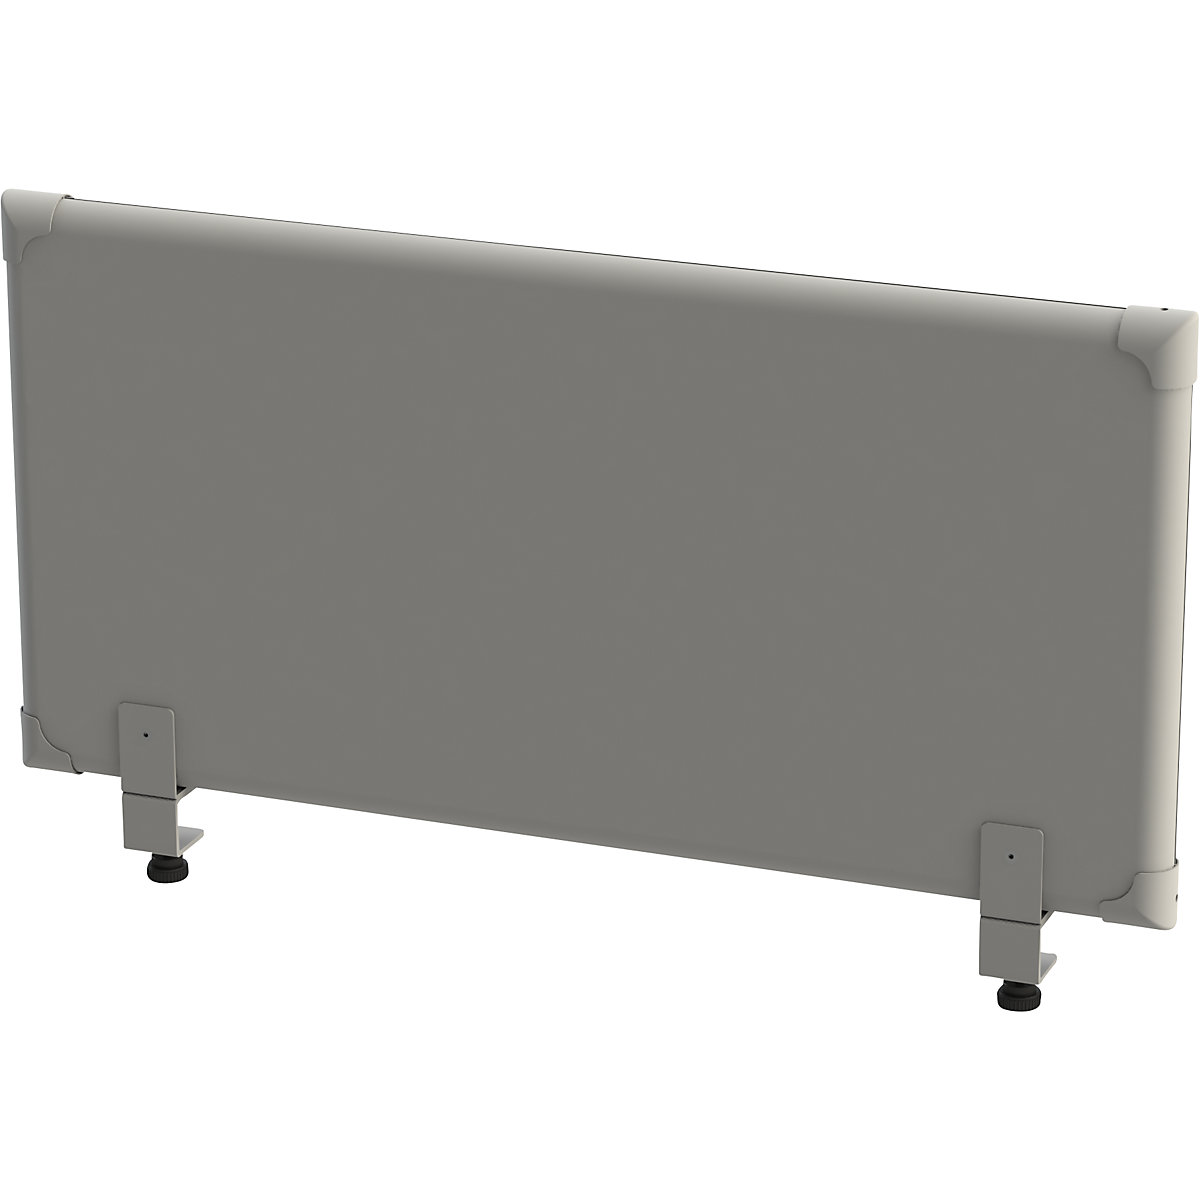 EUROKRAFTpro Akustik-Tischaufsatz-Paneel, Höhe 450 mm, Breite 1000 mm, grau